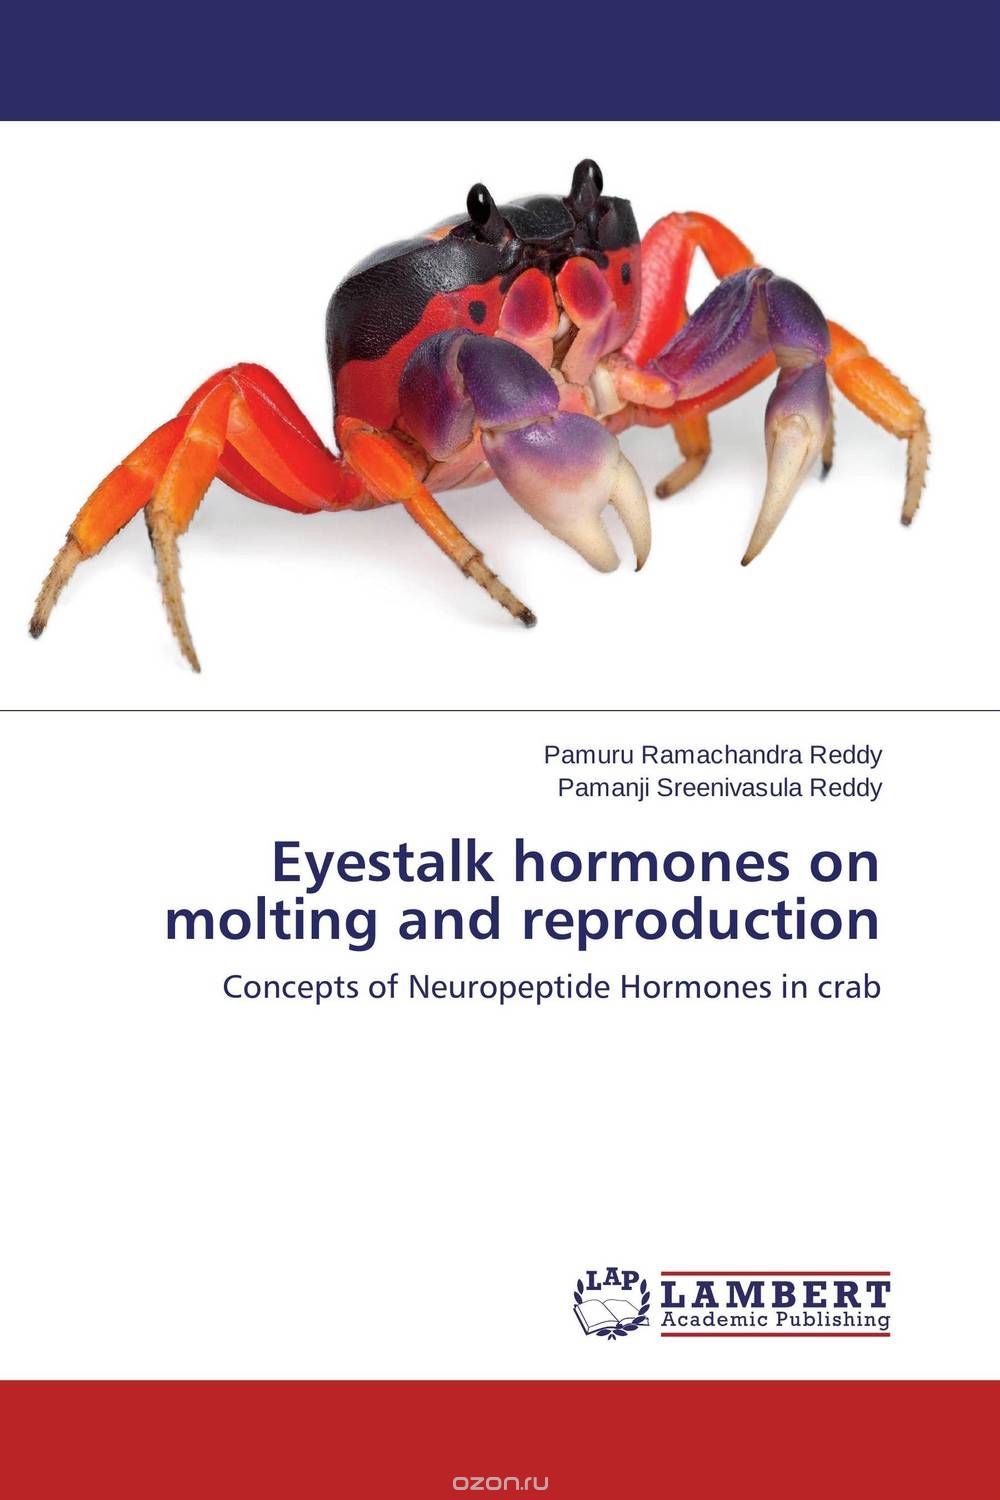 Скачать книгу "Eyestalk hormones on molting and reproduction"